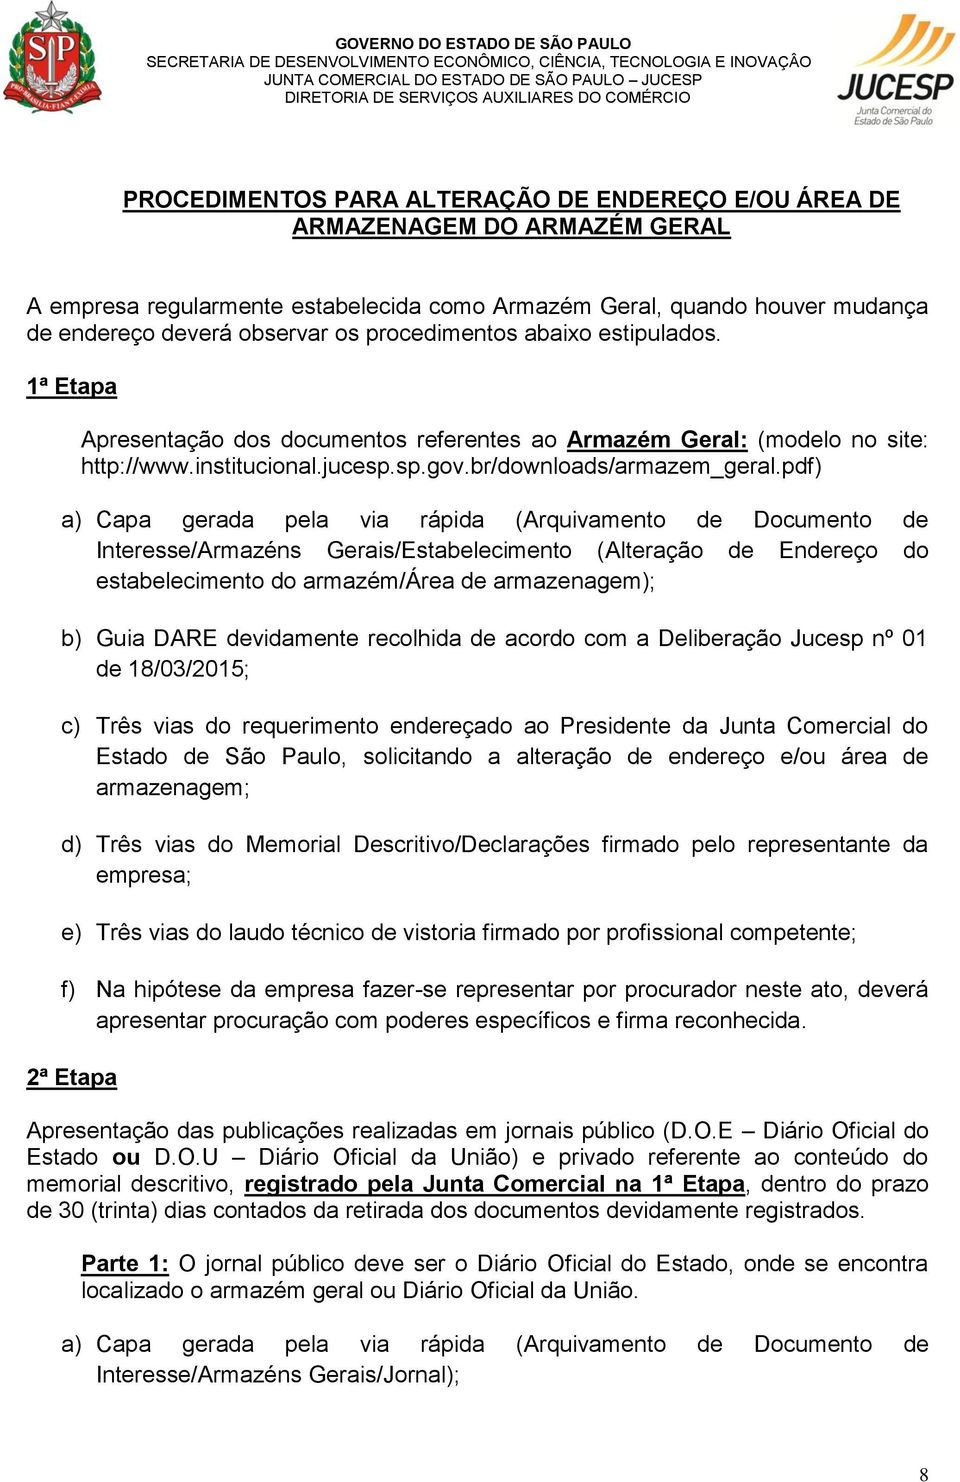 pdf) Interesse/Armazéns Gerais/Estabelecimento (Alteração de Endereço do estabelecimento do armazém/área de armazenagem); Estado de São Paulo, solicitando a alteração de endereço e/ou área de